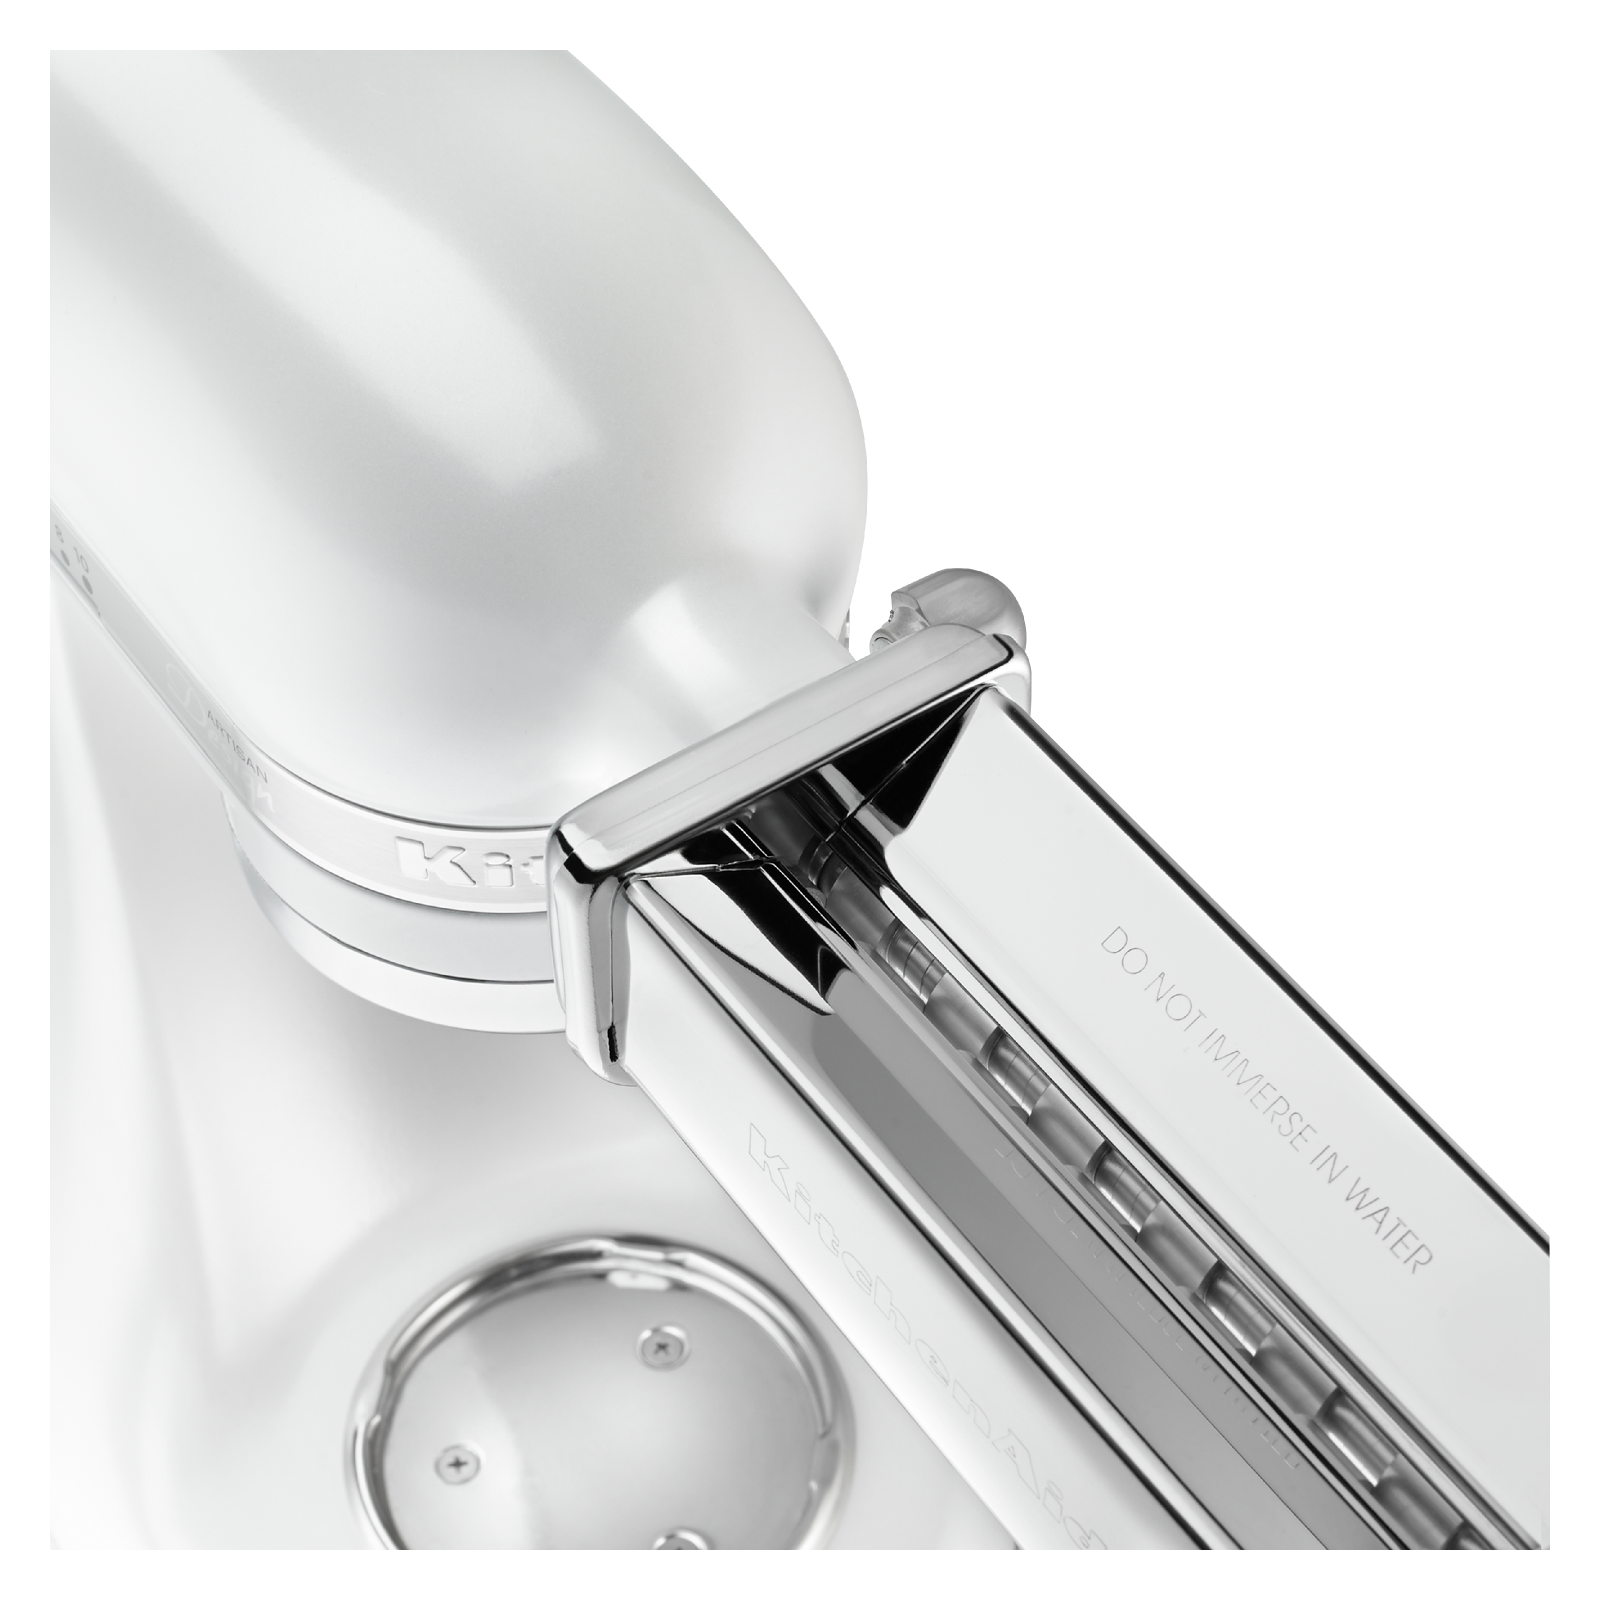 KitchenAid - 5 Quarts Tilt-Head Mixer in White - KSM155GBFP